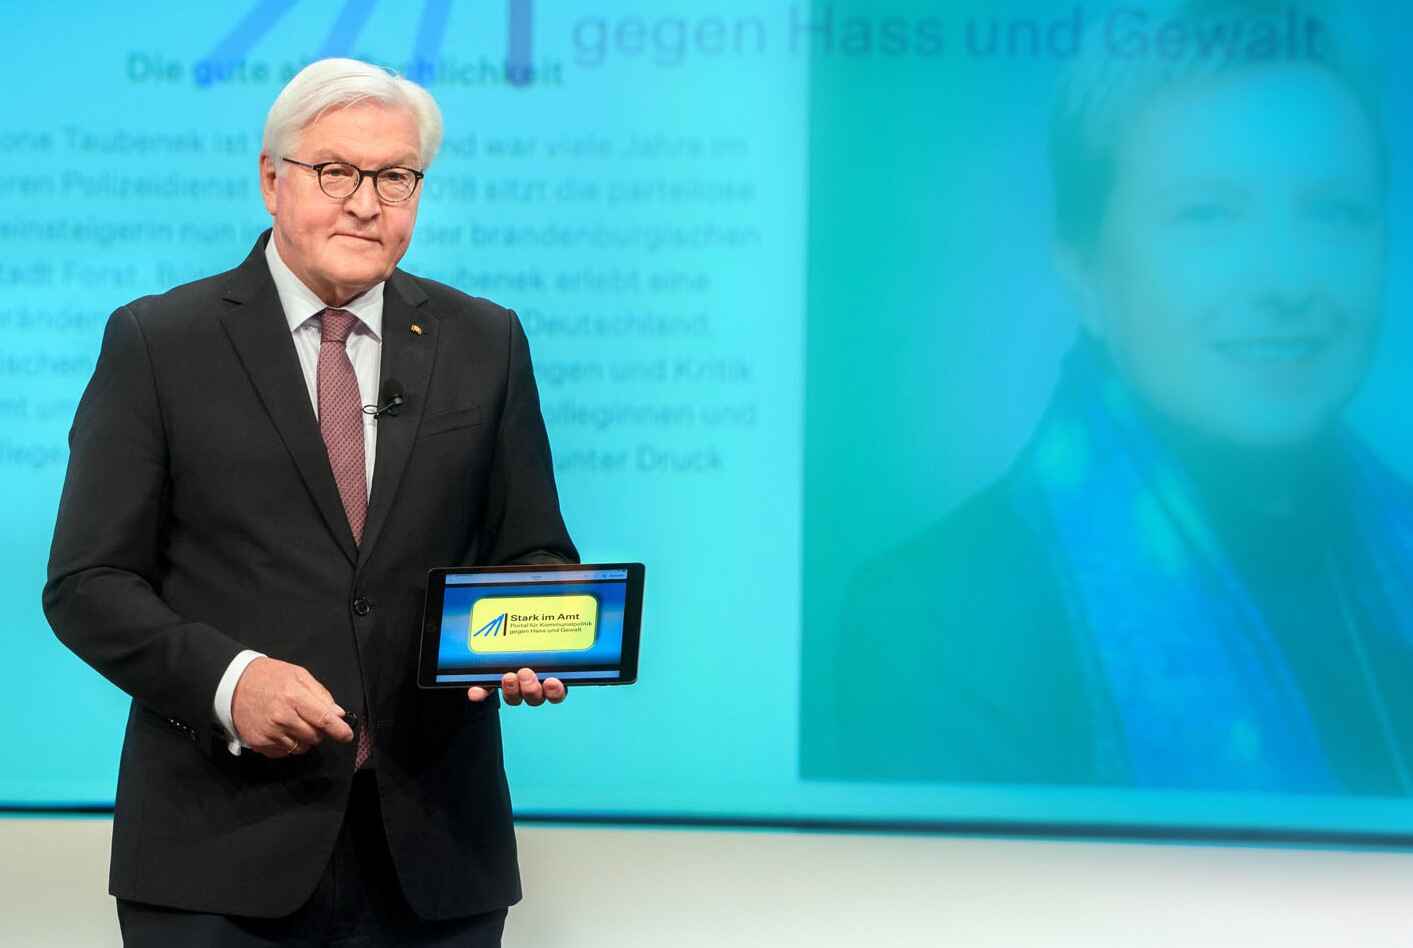 Bundespräsident Frank-Walter Steinmeier schaltet das Portal Stark im Amt in Berlin frei.